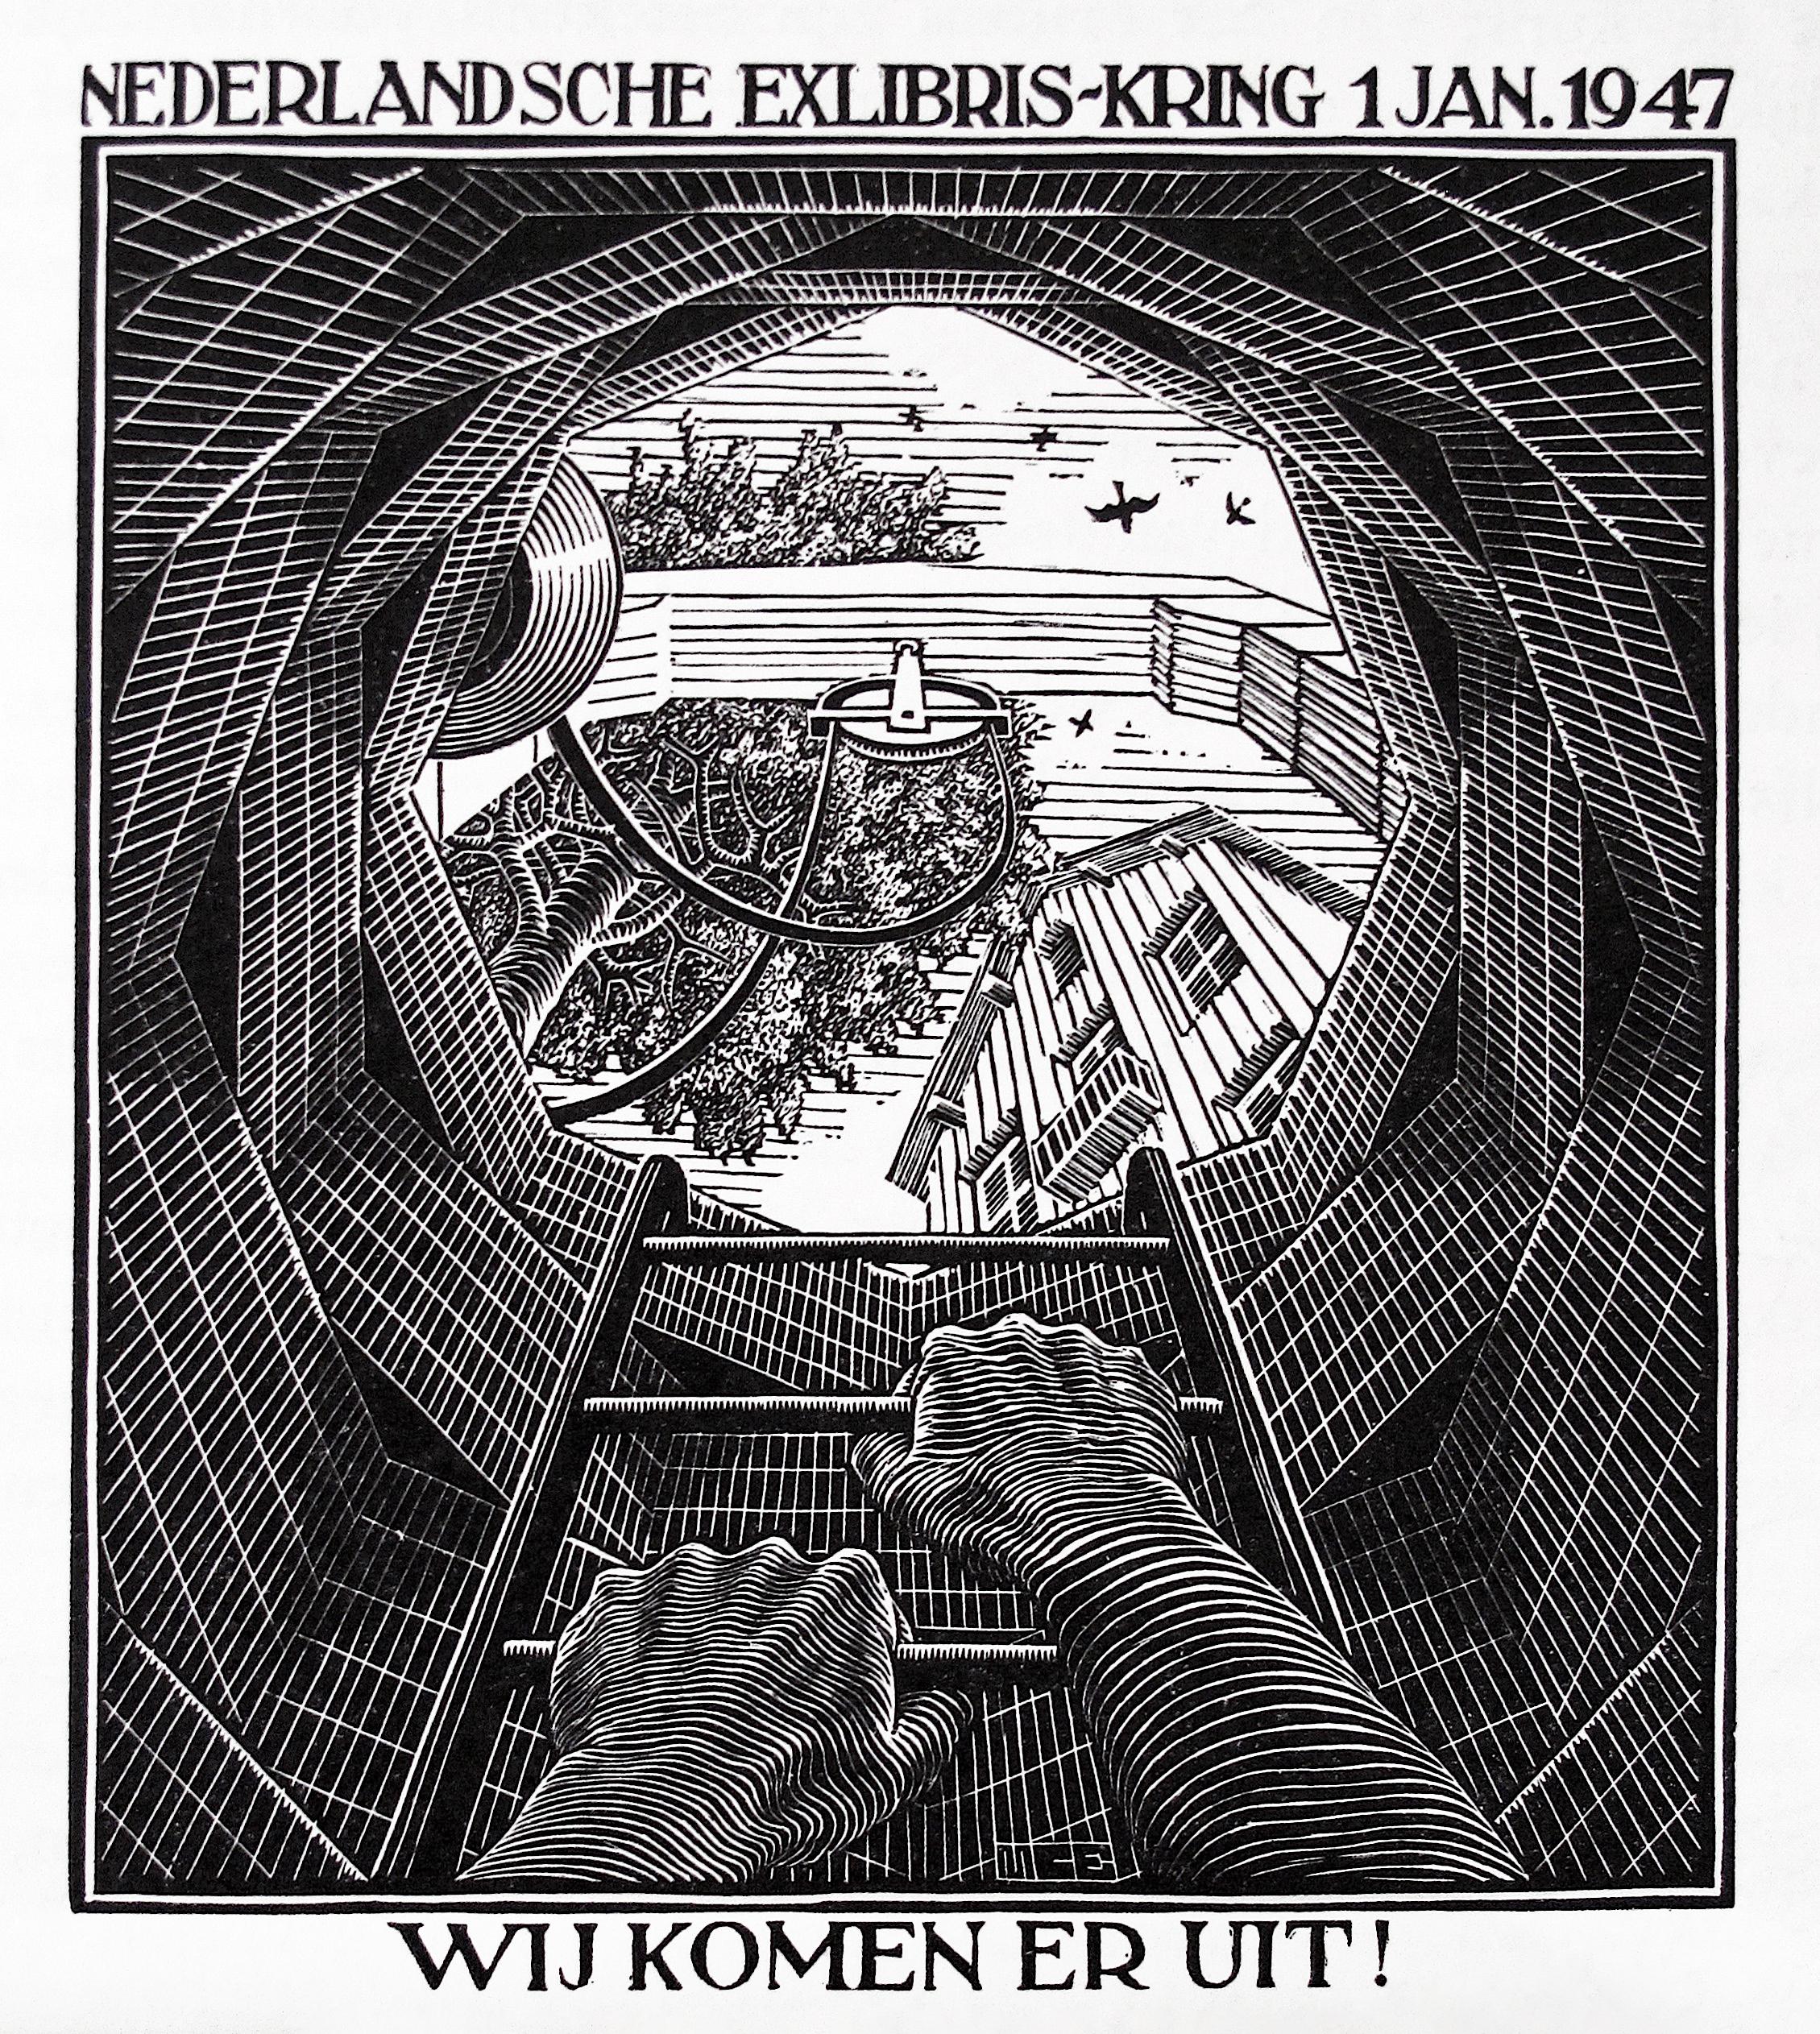 Well  - Print by M.C. Escher